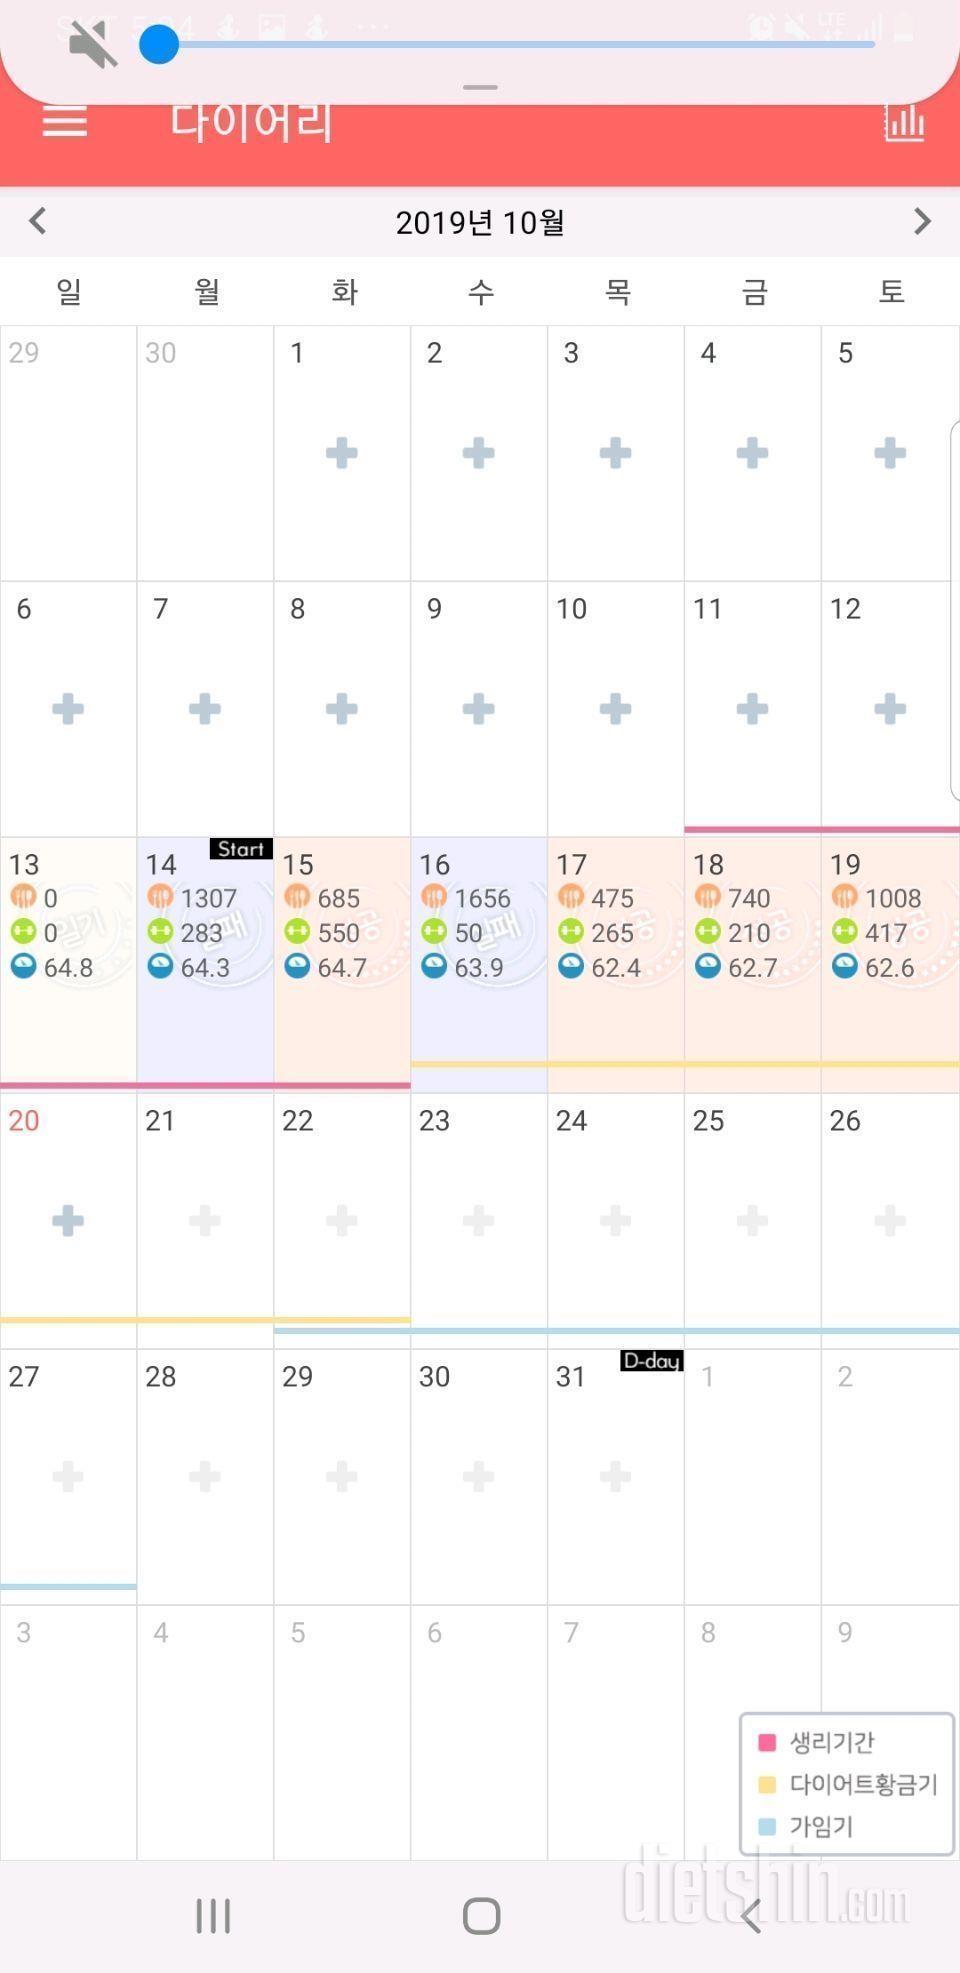 10월) 일주일 종합일기와 내일 계획(64.8→62.6 = -2.2kg)